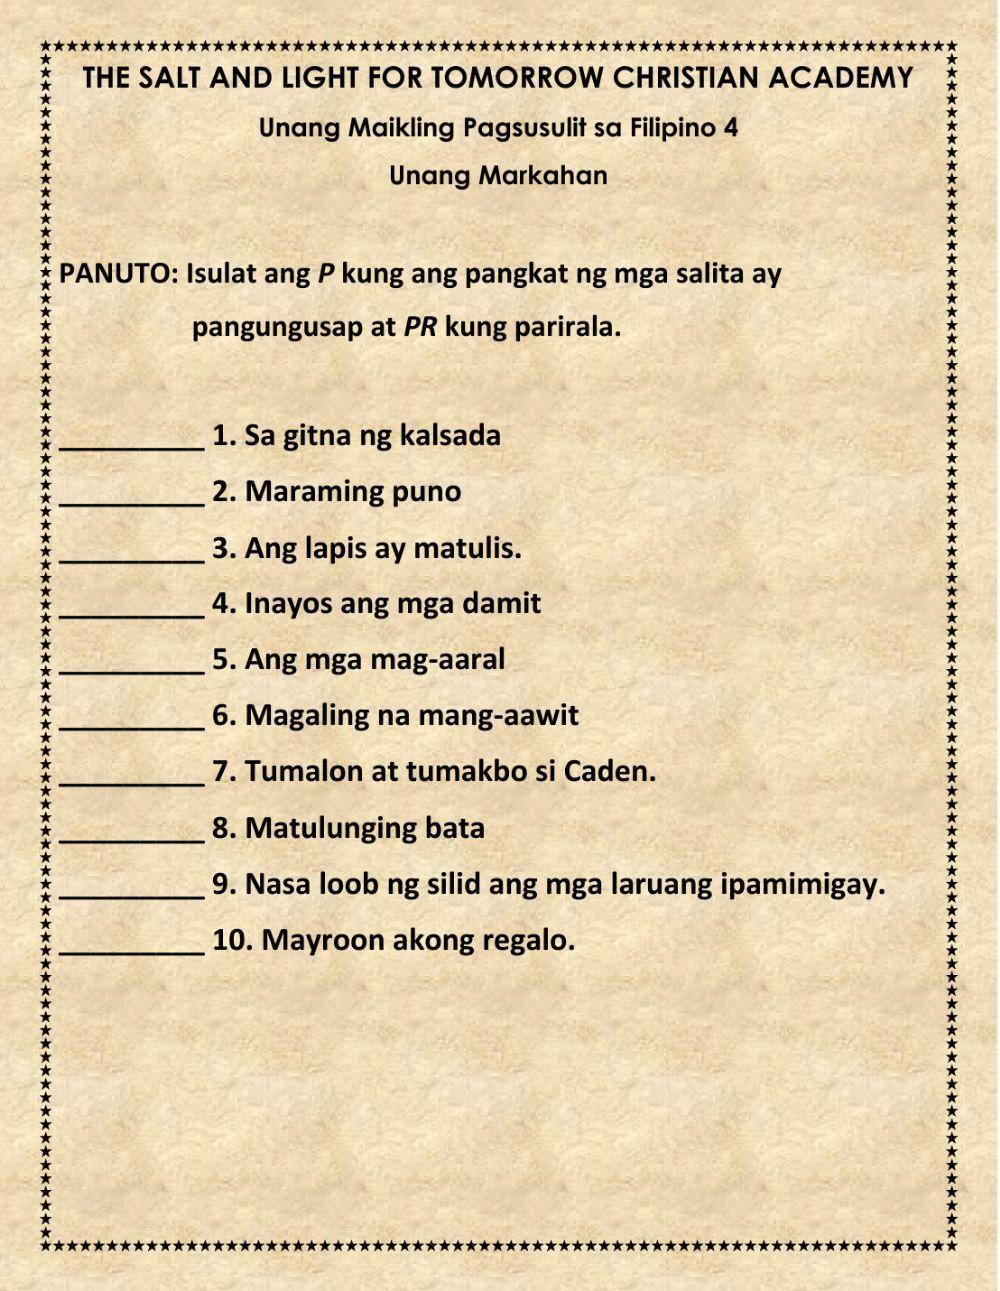 Filipino 4 quiz 1